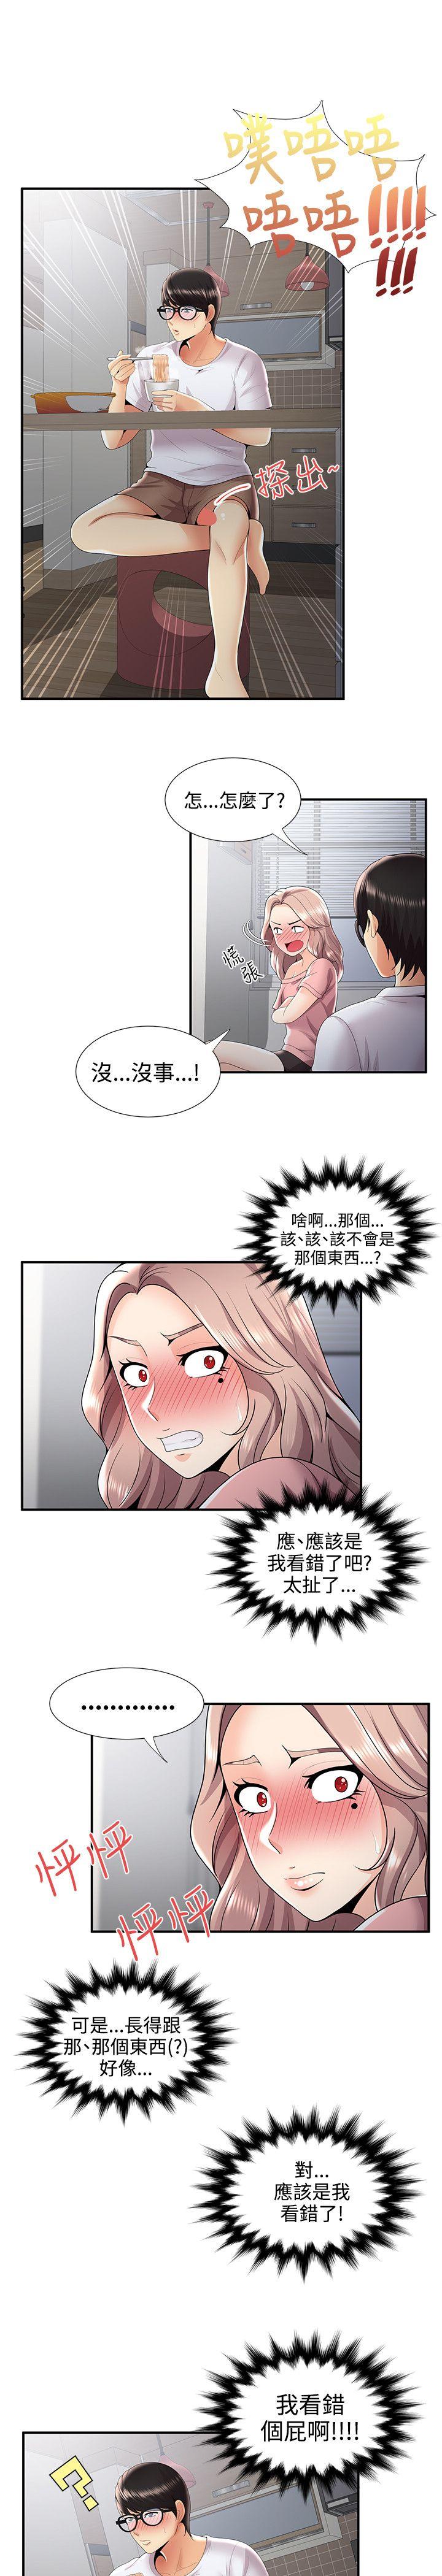 韩国污漫画 無法自拔的口紅膠 第31话 18